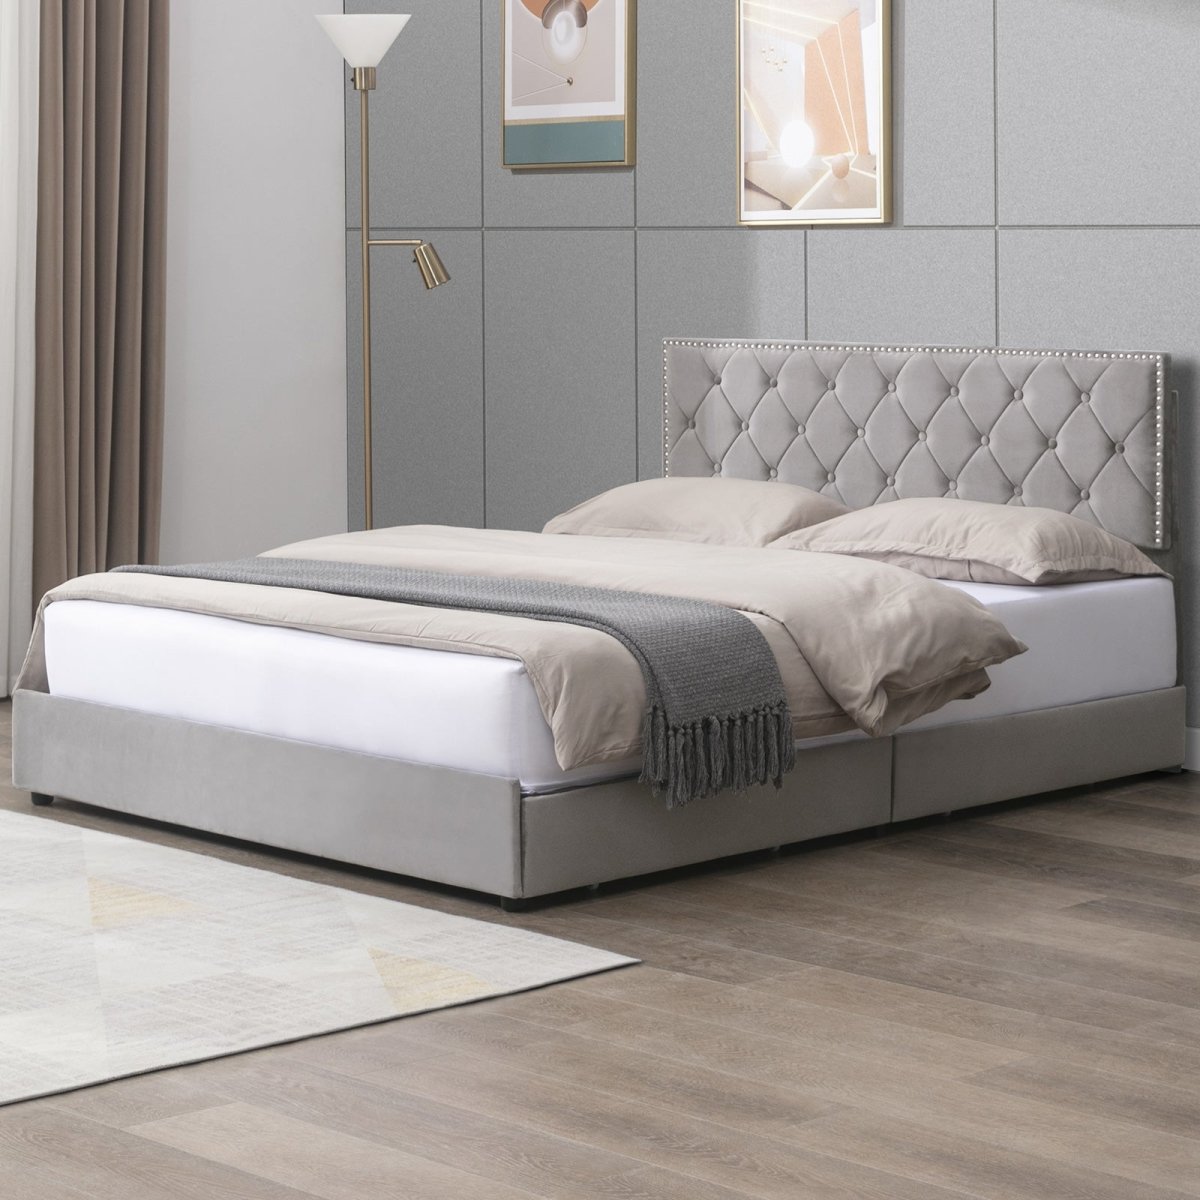 Drawer Bed | Modern Velvet Upholstered Platform Storage Bed Frame with Adjustable Headboard - Mjkonebed frame